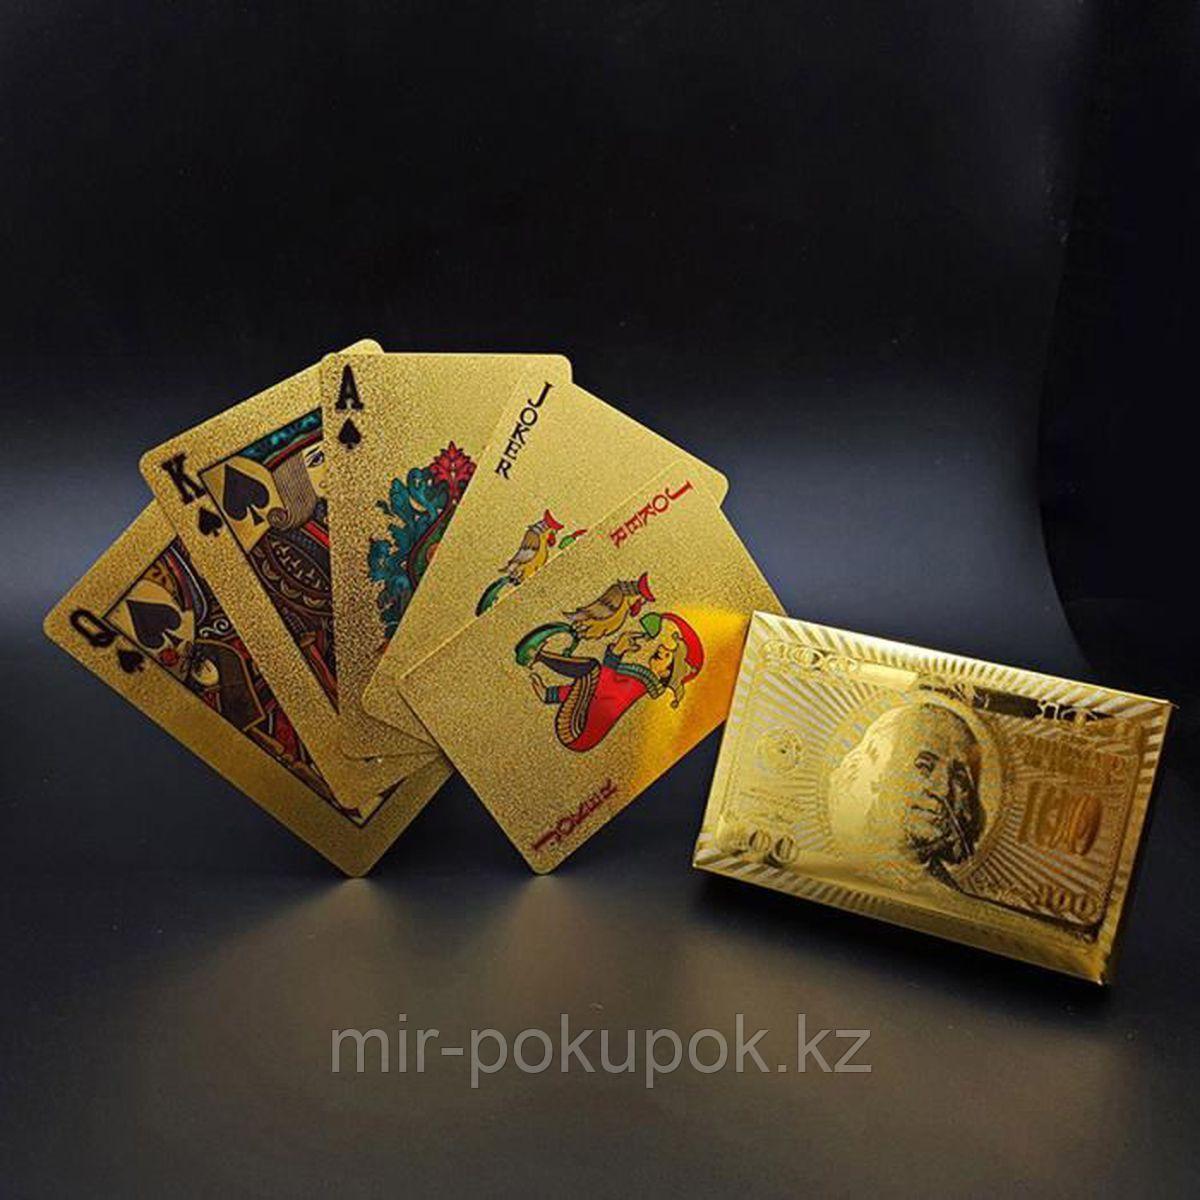 Колода игральных карт под золото и серебро  Premium Gold Standard Poker, Алматы